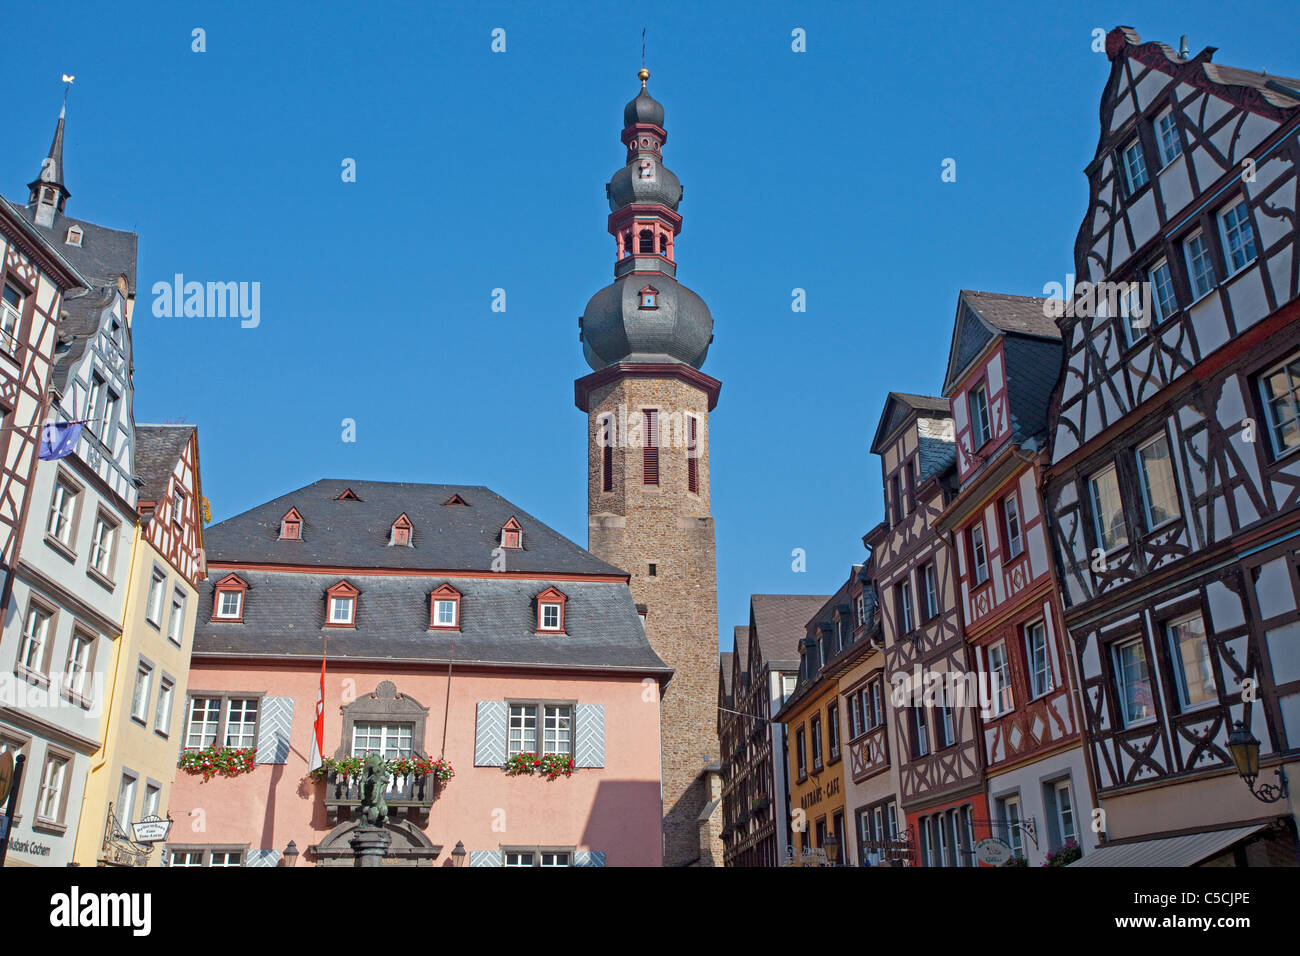 Historischer Marktplatz, Pfarrkirche Sankt Martin Cochem, Market place, church, old town Stock Photo